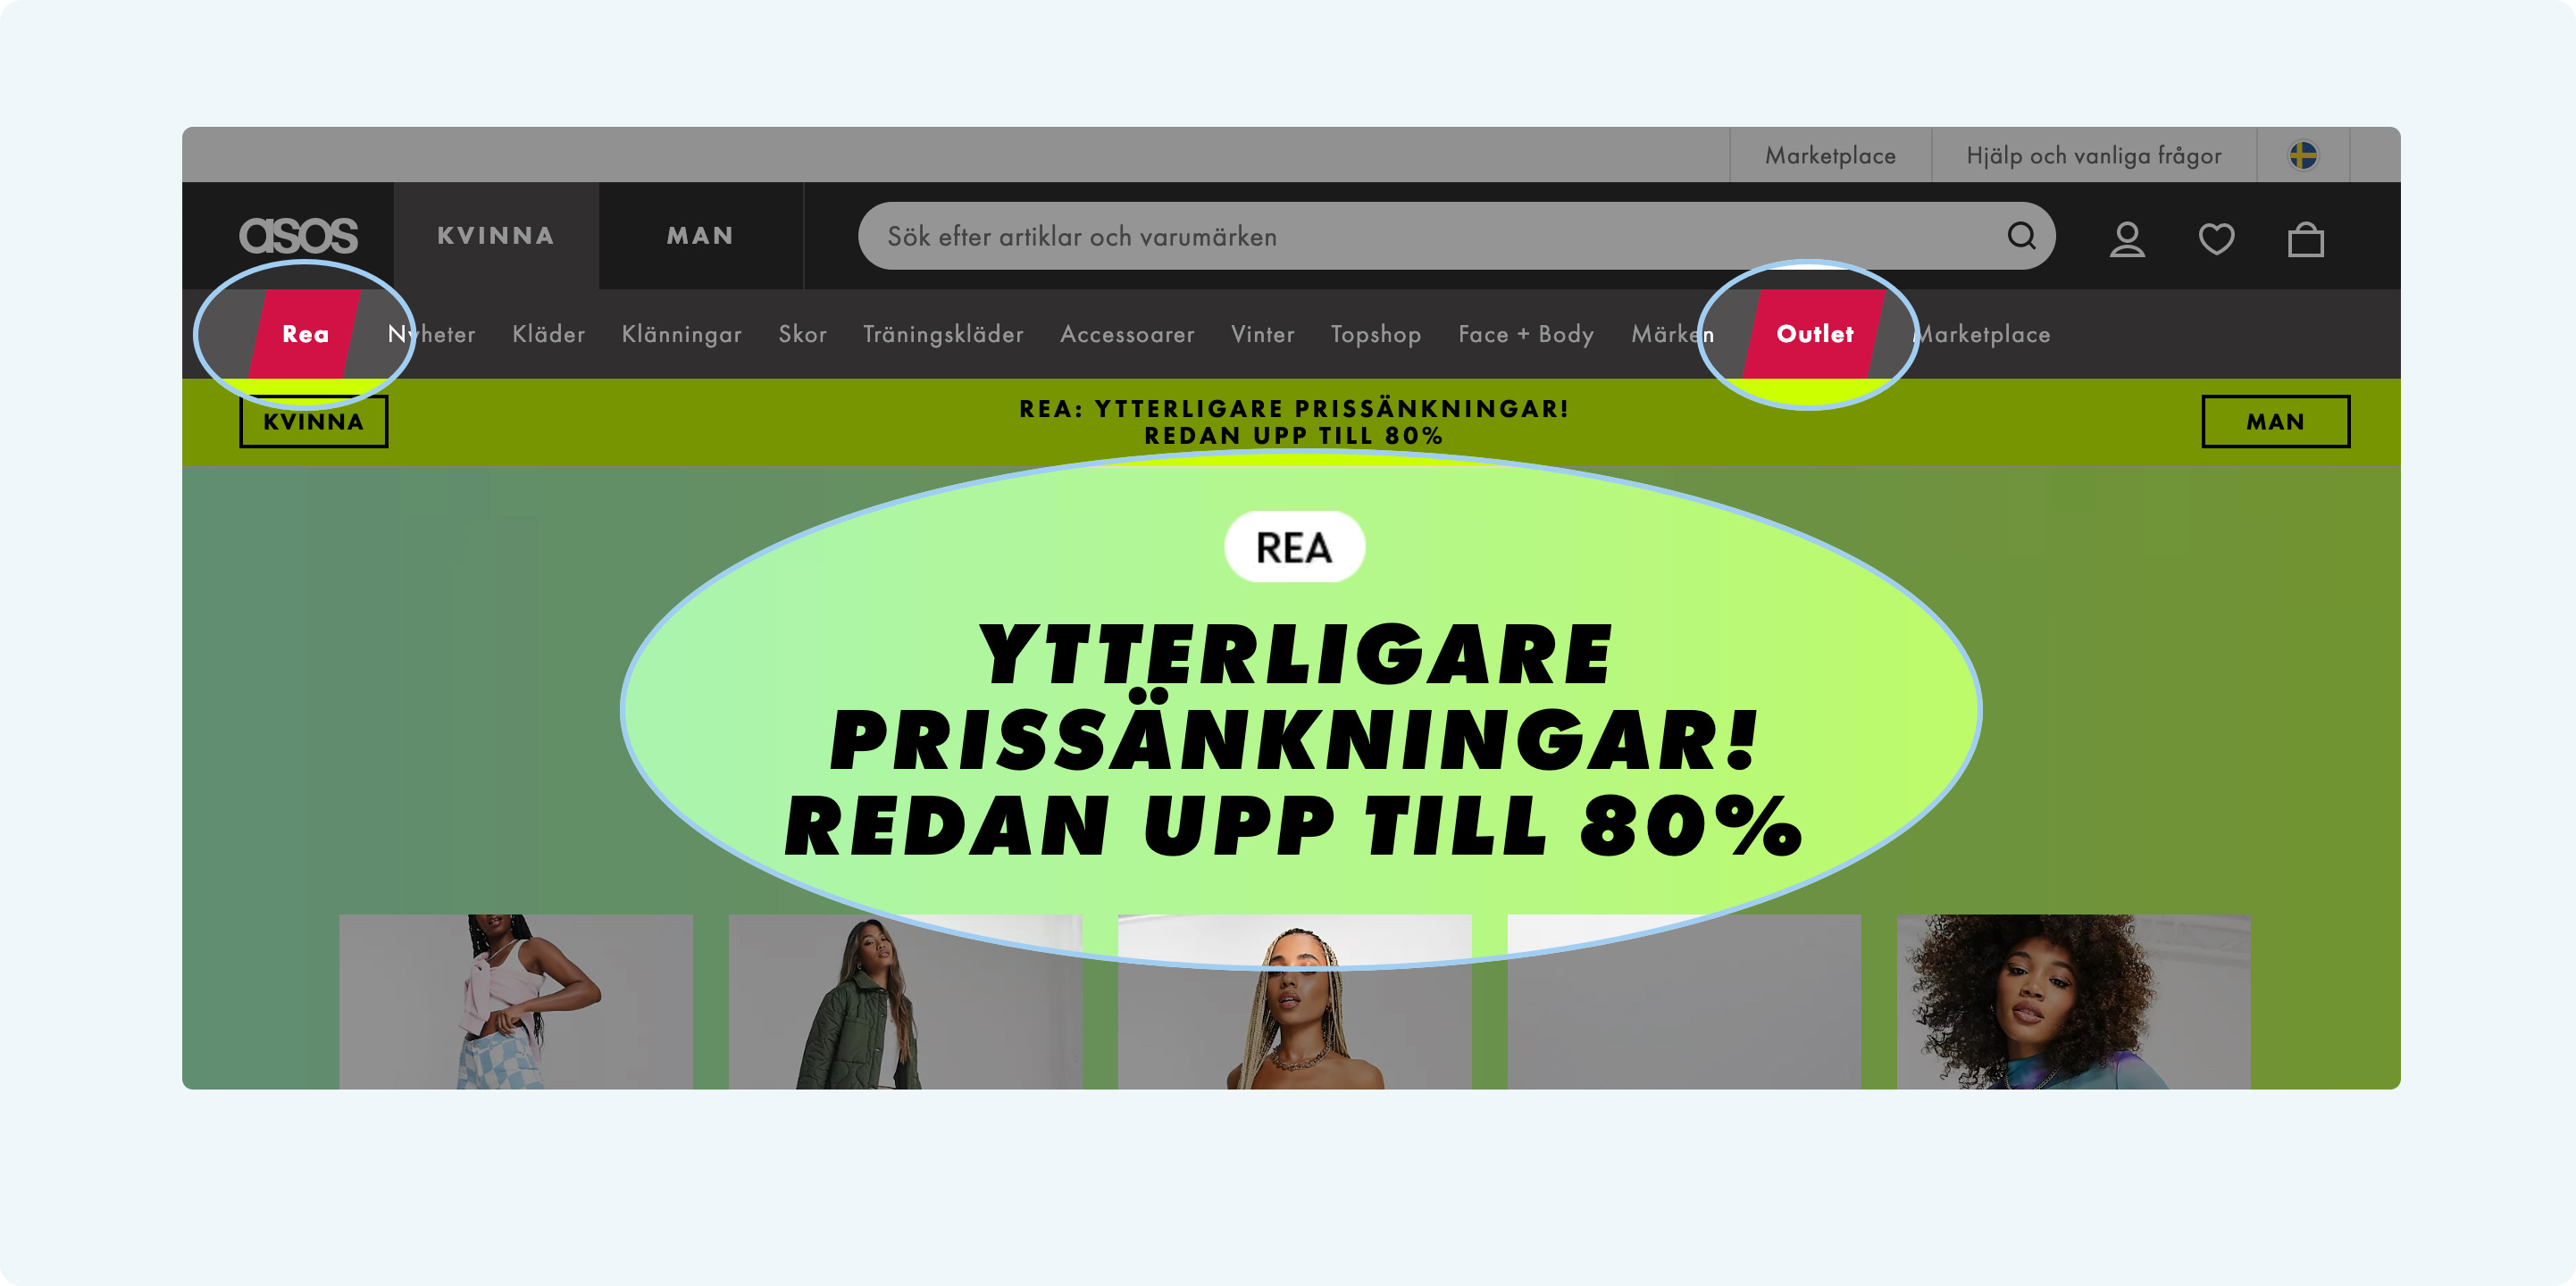 E-handelskunder: Rabattjägaren (Bargin hunters) gillar tydliga ingångar för REA och Outlet - Limetta Digitalbyrå